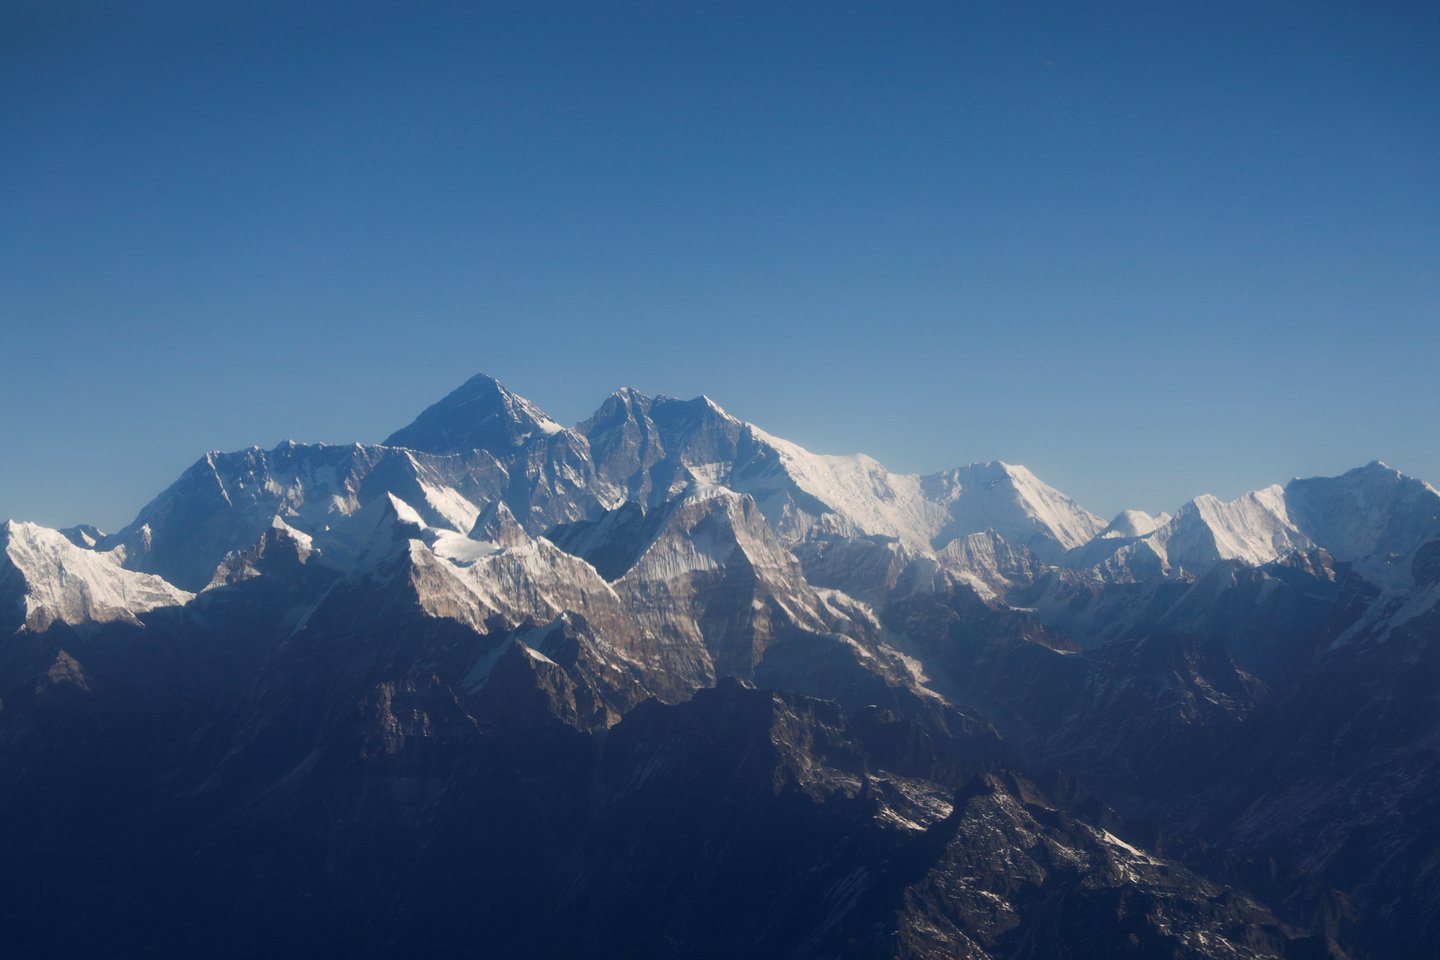  Ant Everesto žuvo du alpinistai iš JAV ir Šveicarijos, ketvirtadienį pranešė ekspedicijų organizatoriai Nepale.  <br> Reuters/Scanpix nuotr.